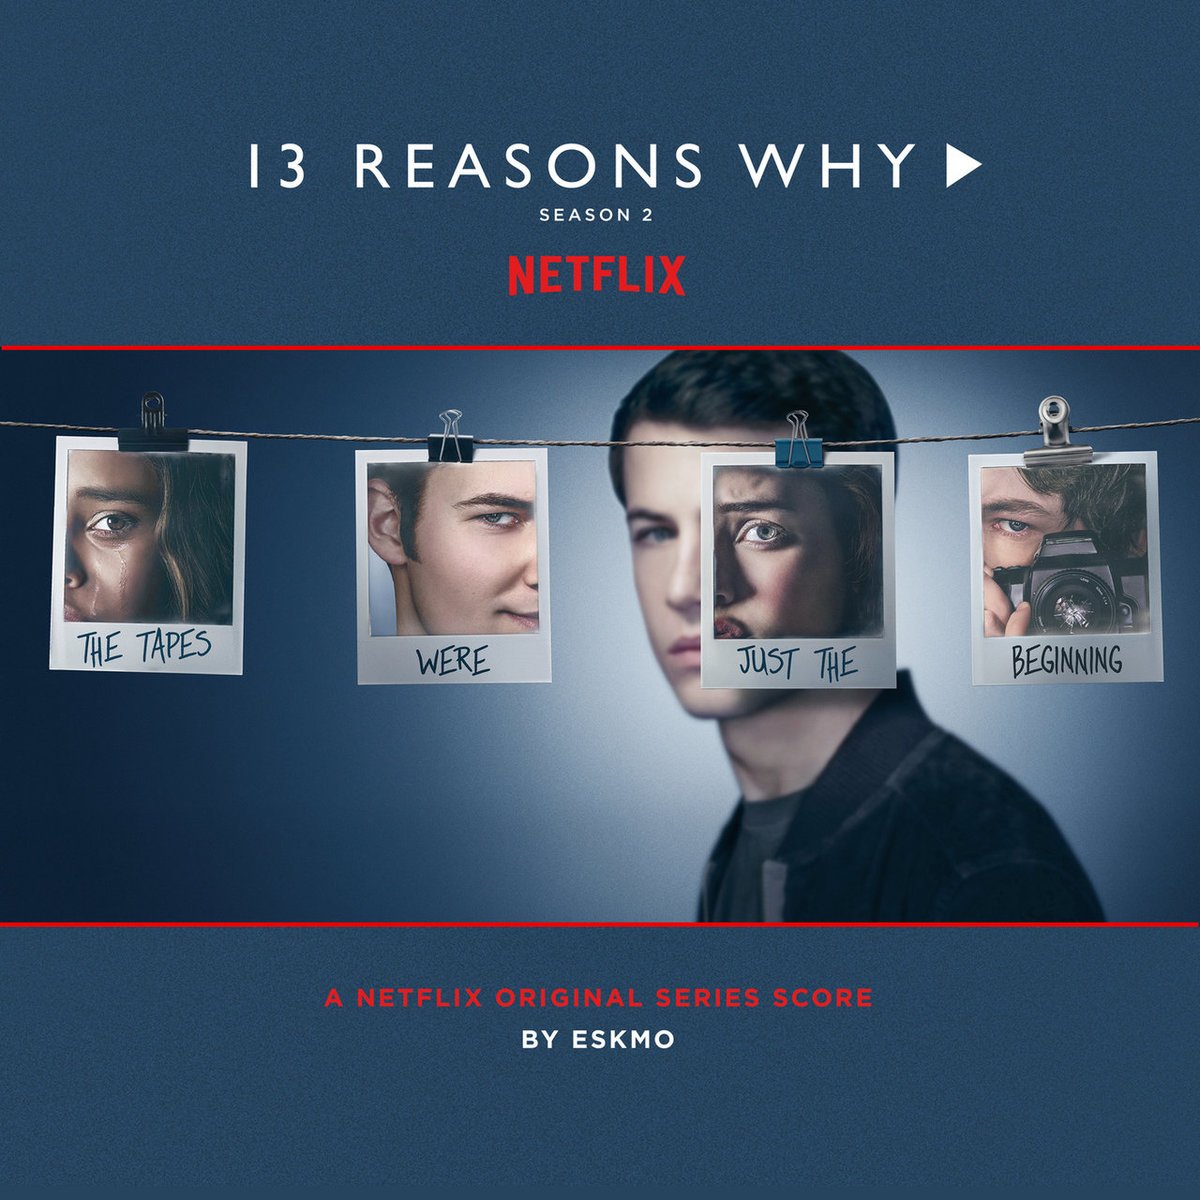 13Reasons Why - Season 2 - Original Series Score - By: Eskmo  - Album - [CDQ] - 2018